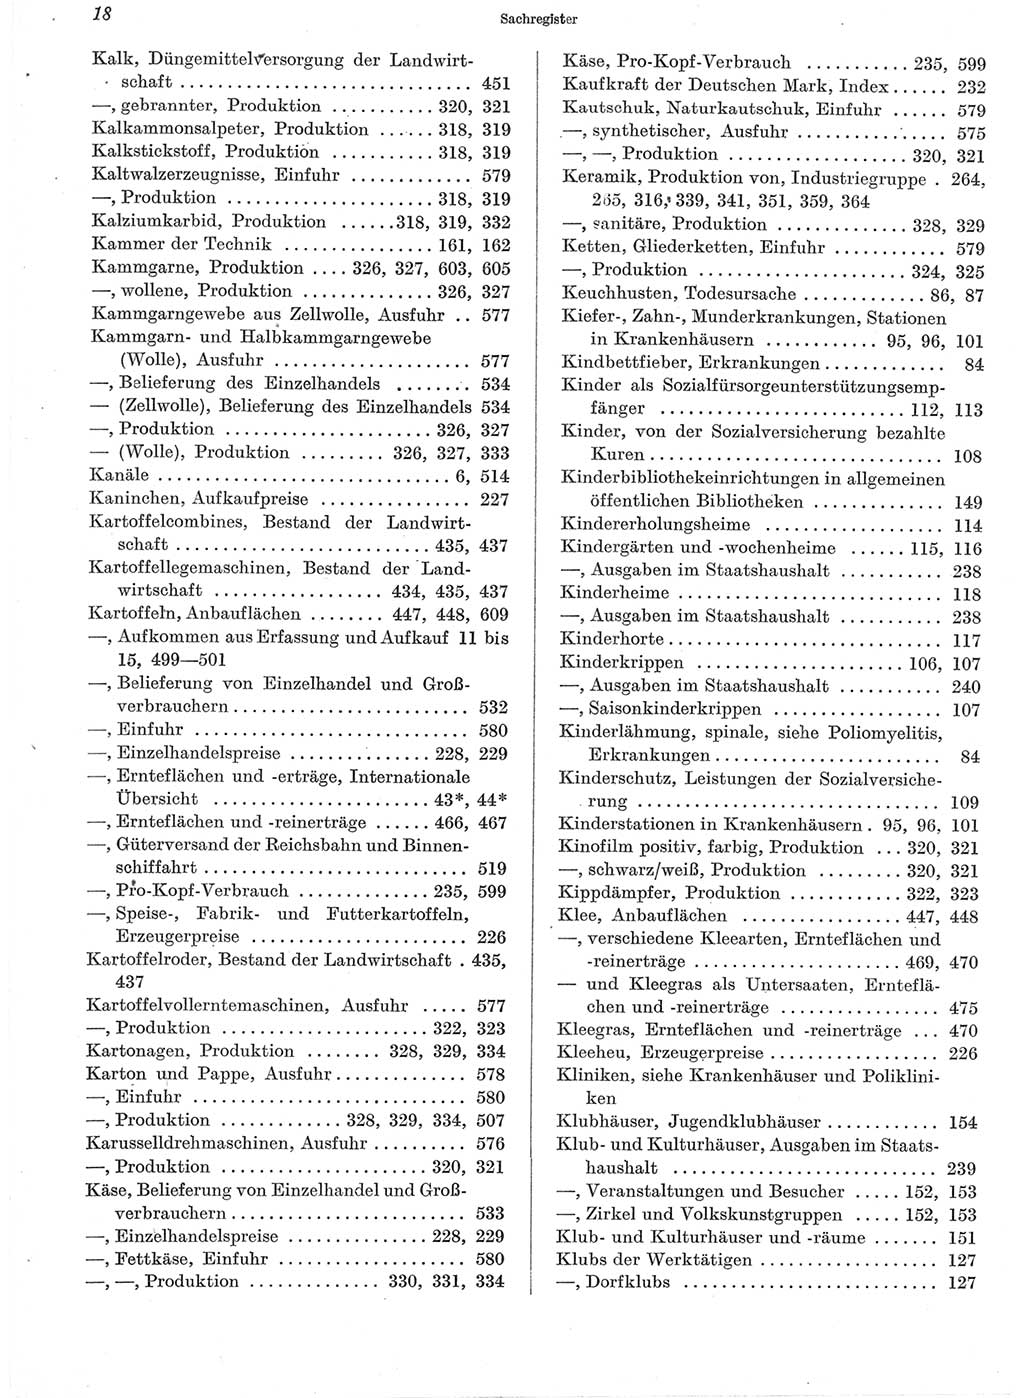 Statistisches Jahrbuch der Deutschen Demokratischen Republik (DDR) 1960-1961, Seite 18 (Stat. Jb. DDR 1960-1961, S. 18)